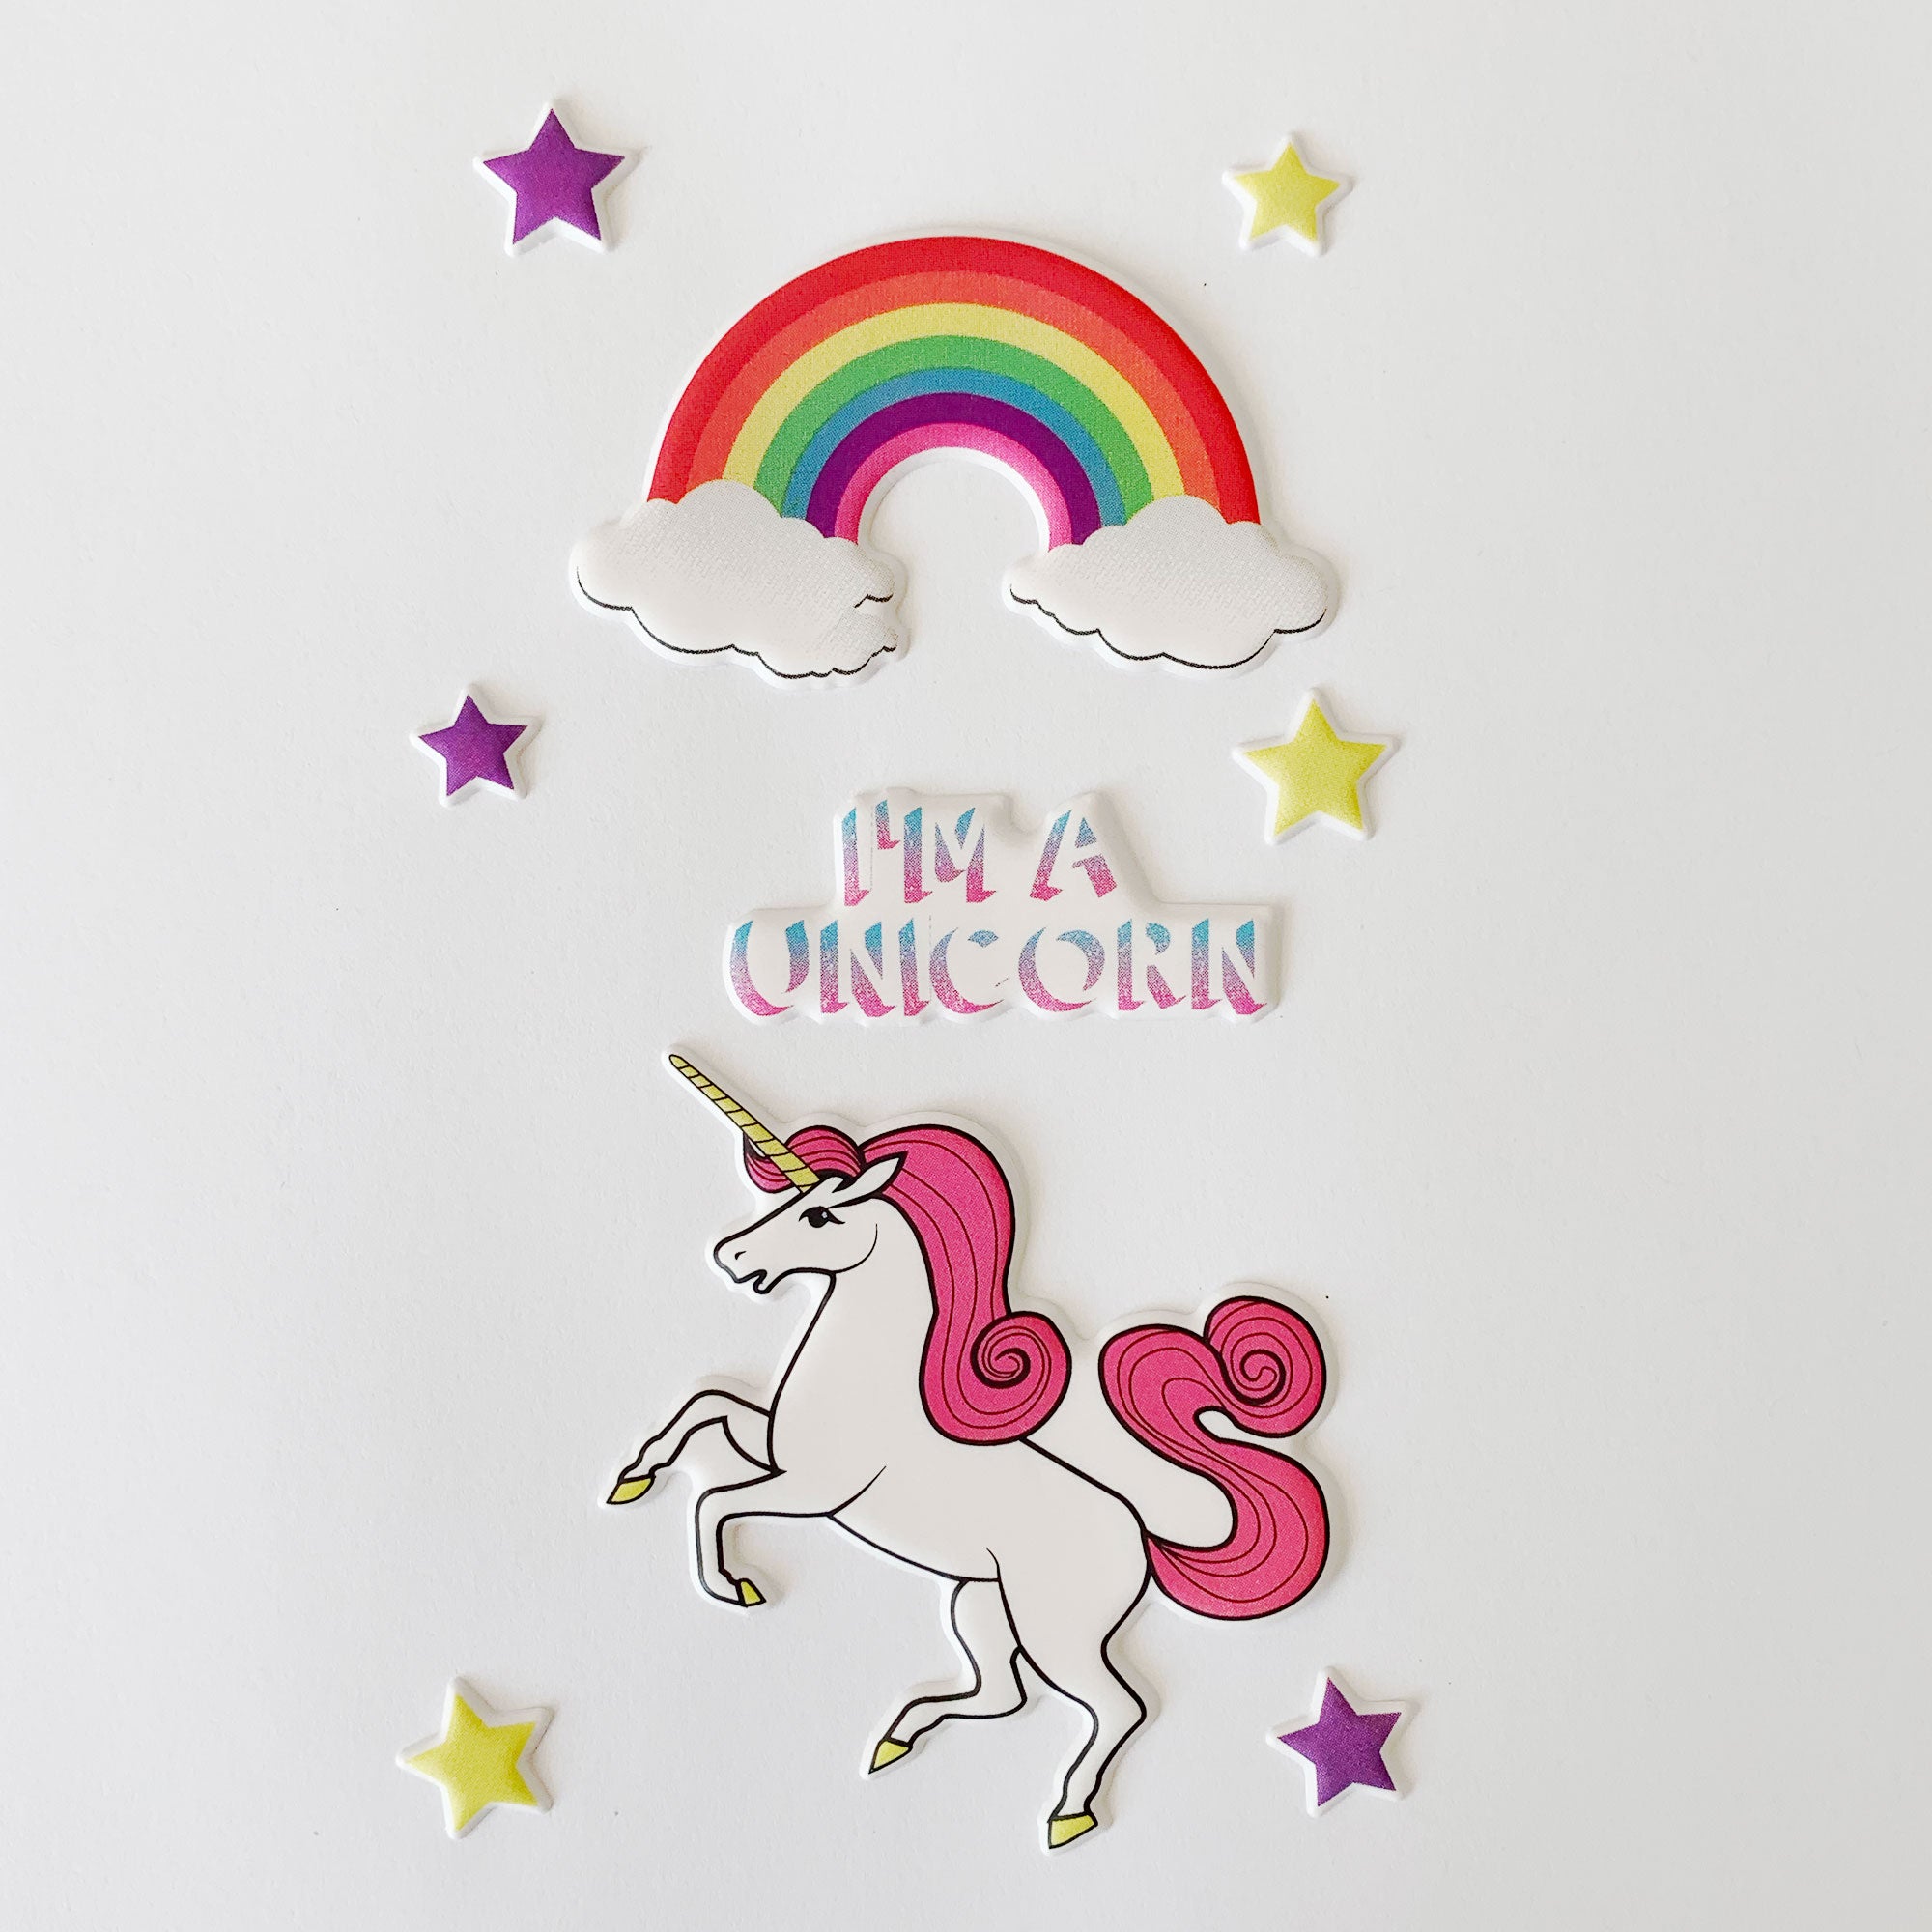 Believe in Unicorns 3D Sticker Sheet